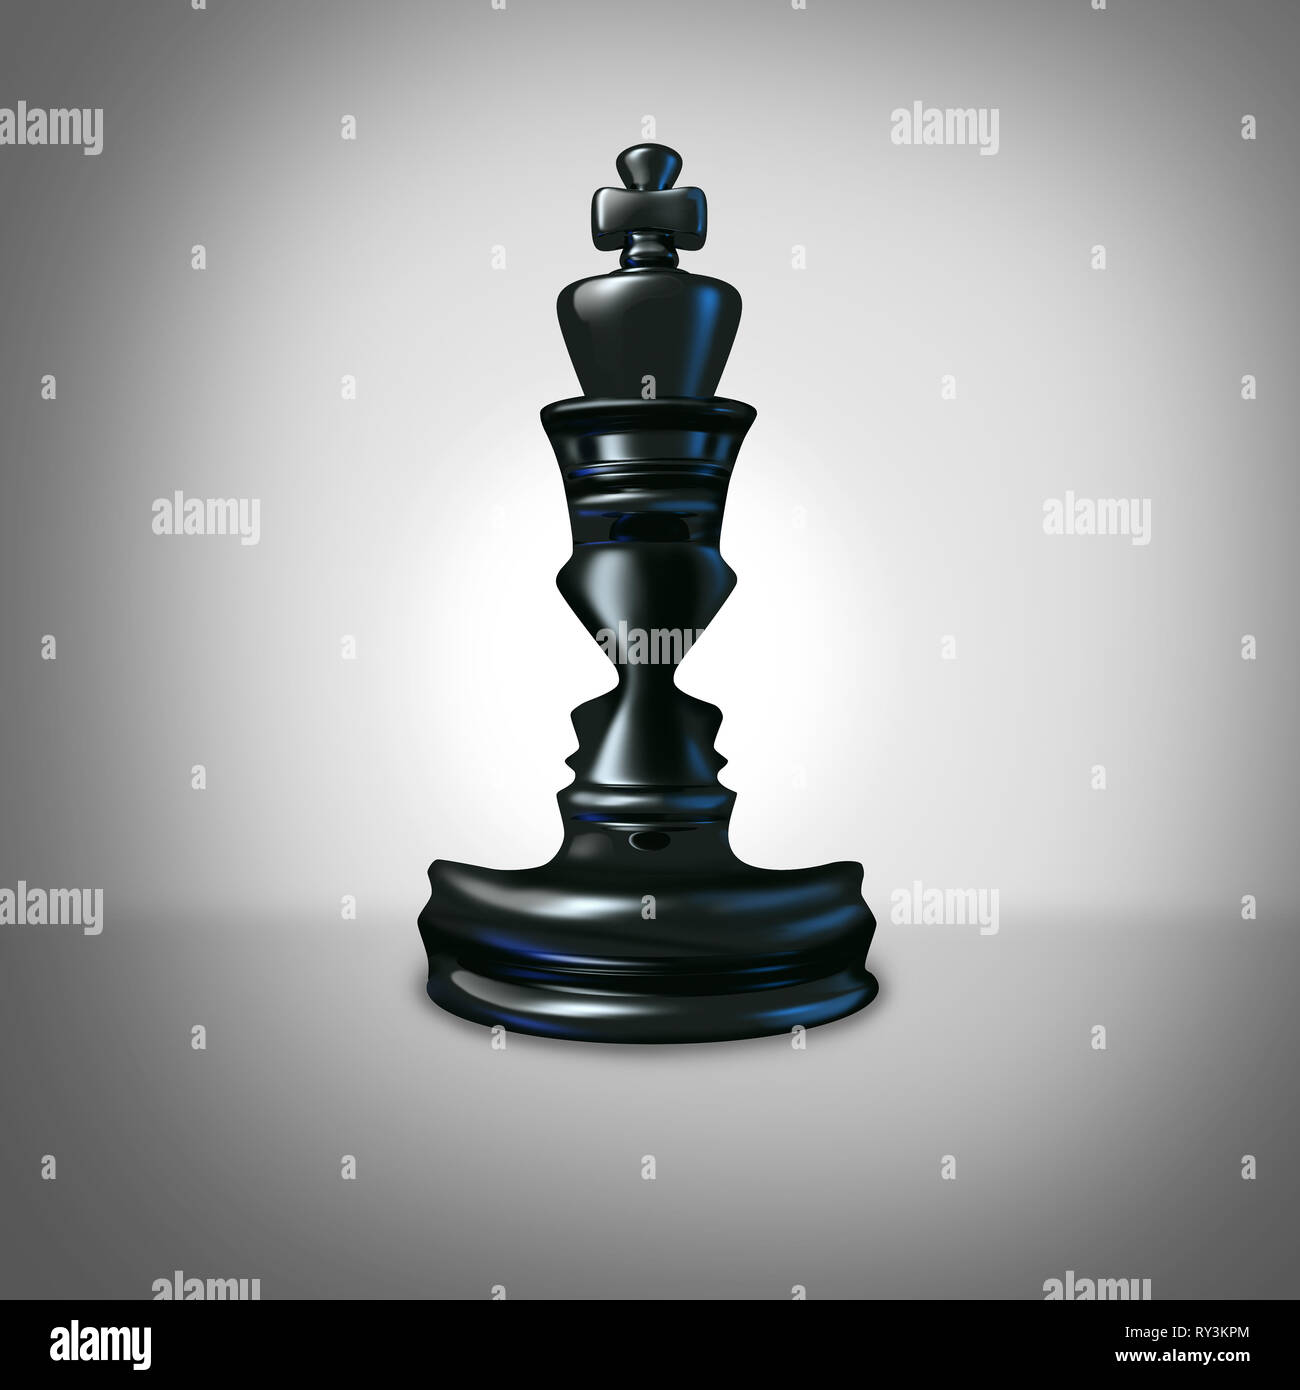 Führung Partner Konzept und gemeinsam Erfolg Symbol Kräfte Geschäftsidee für Team Strategie mit zwei Gesichtern geprägt wie die chess König. Stockfoto